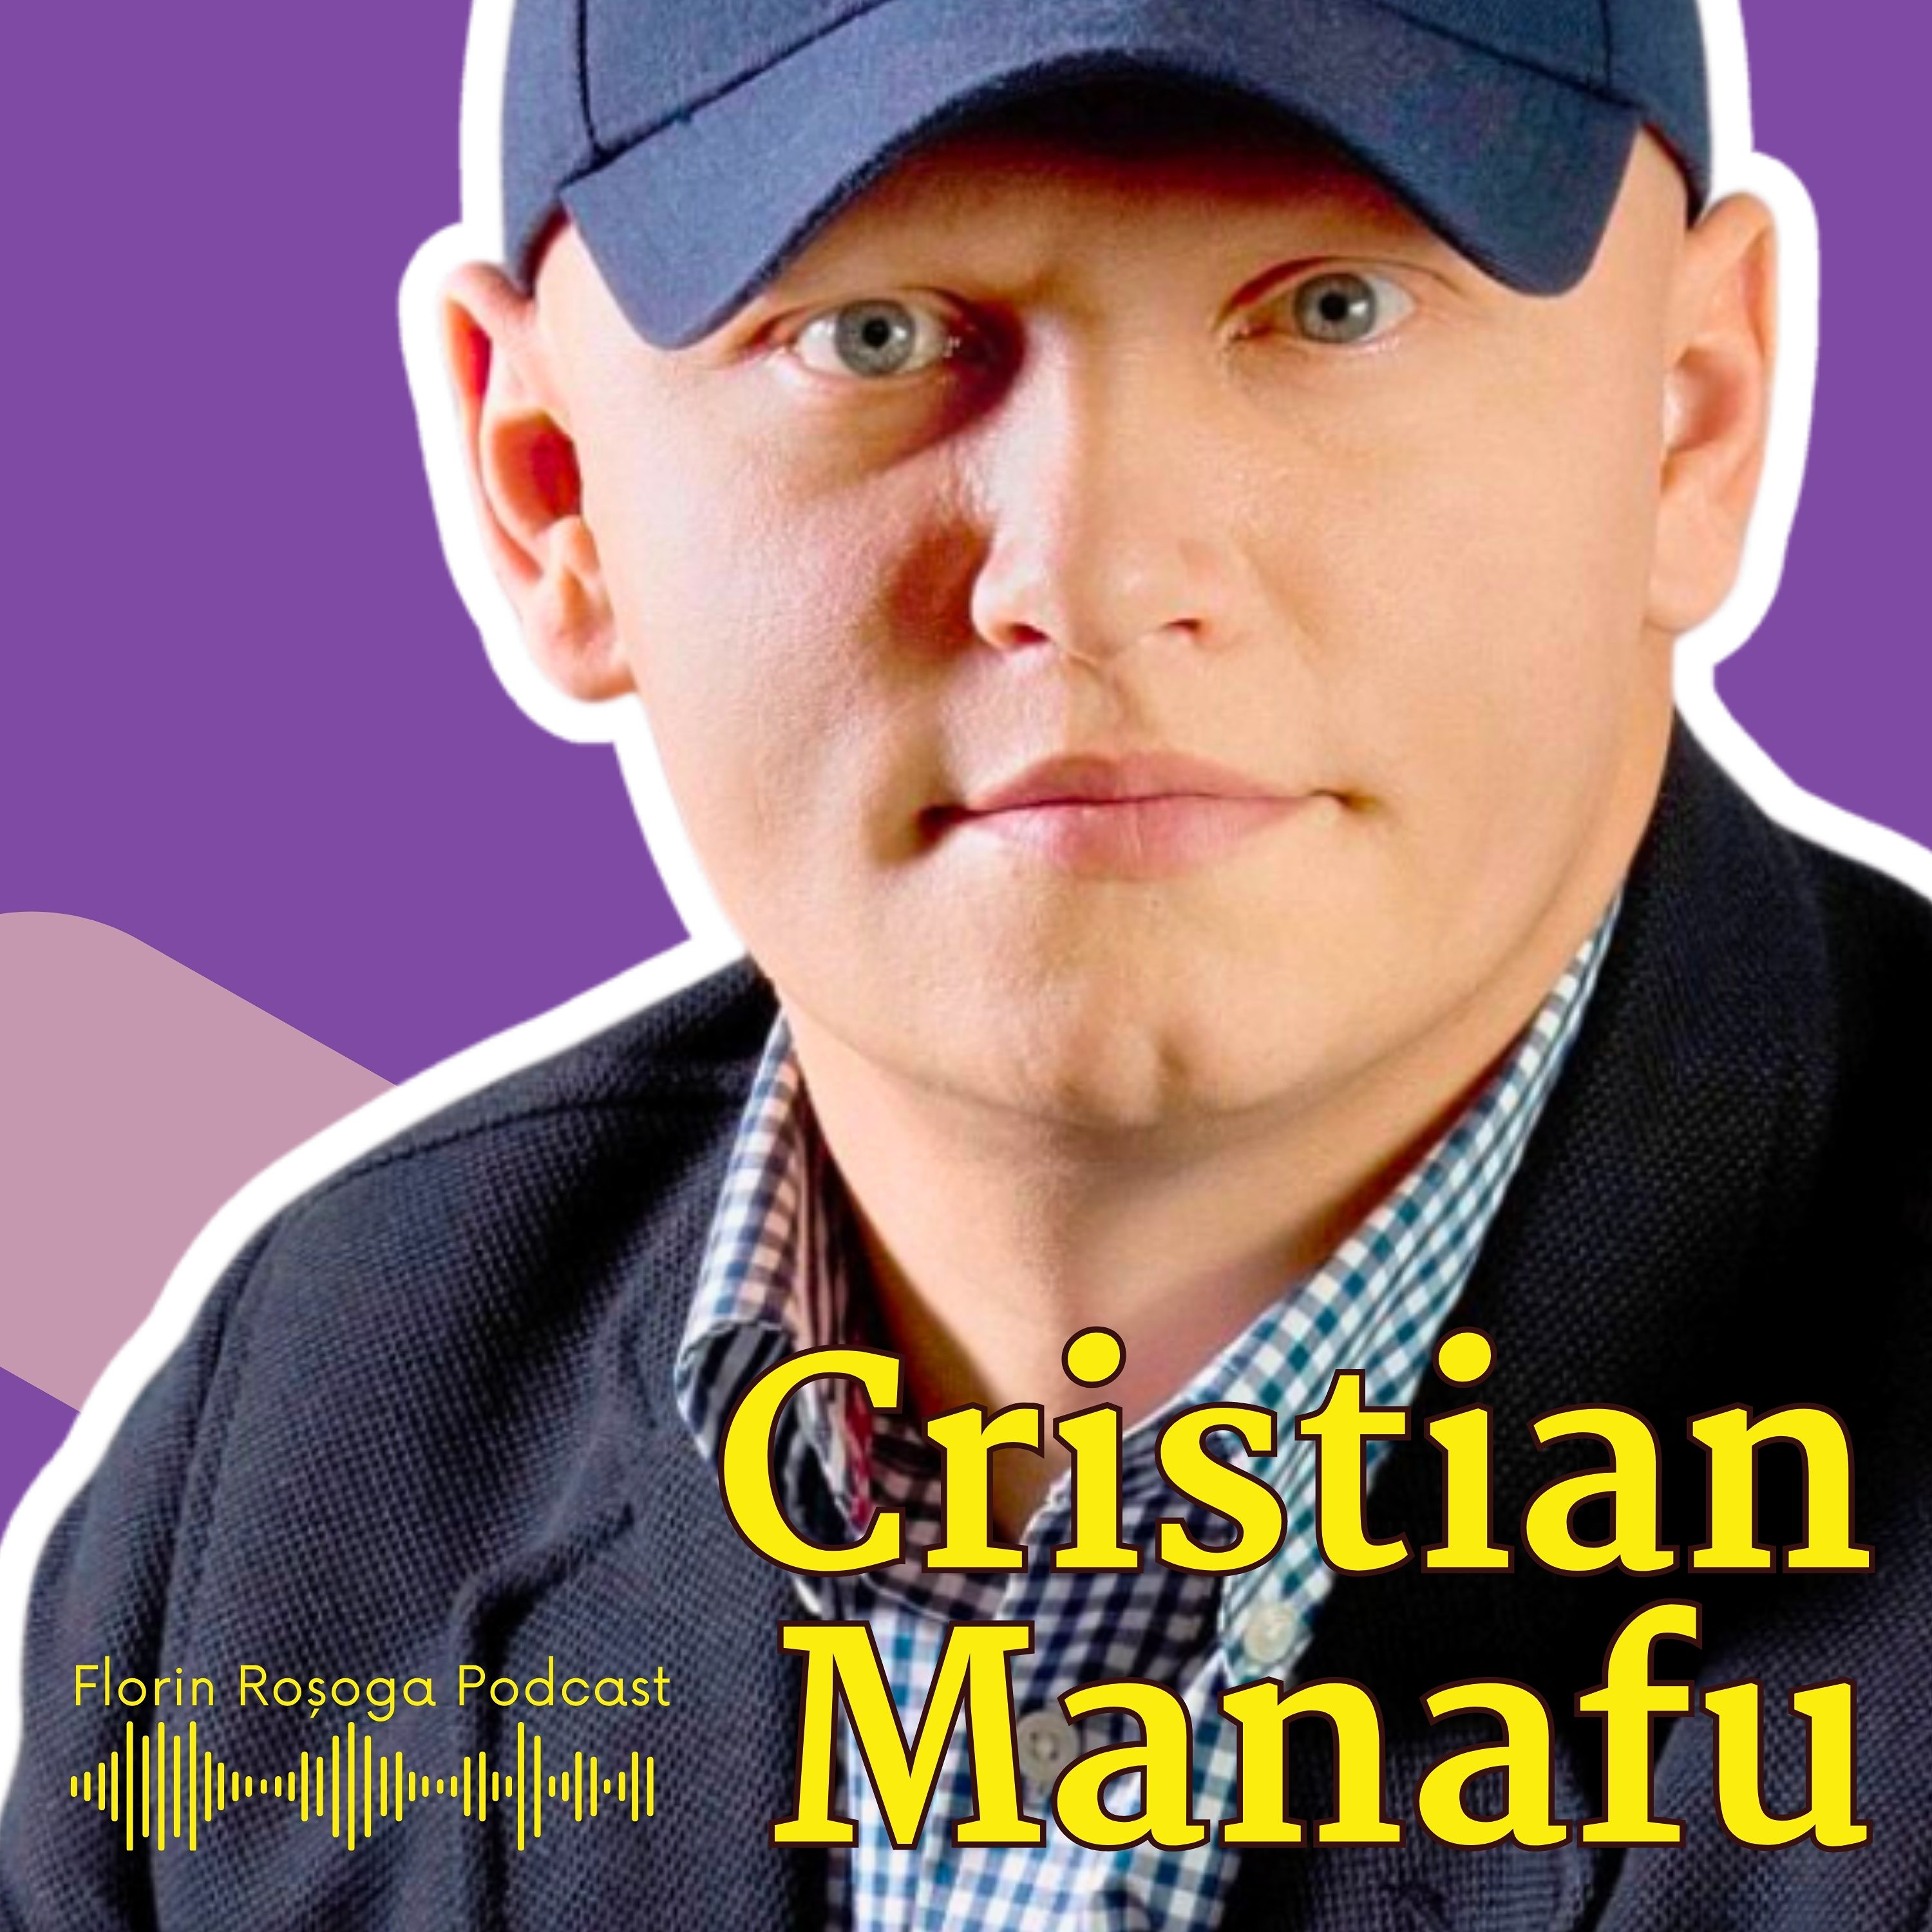 Evenimente de Business și Dezvoltarea Profesională: Conversație cu Cristian Manafu